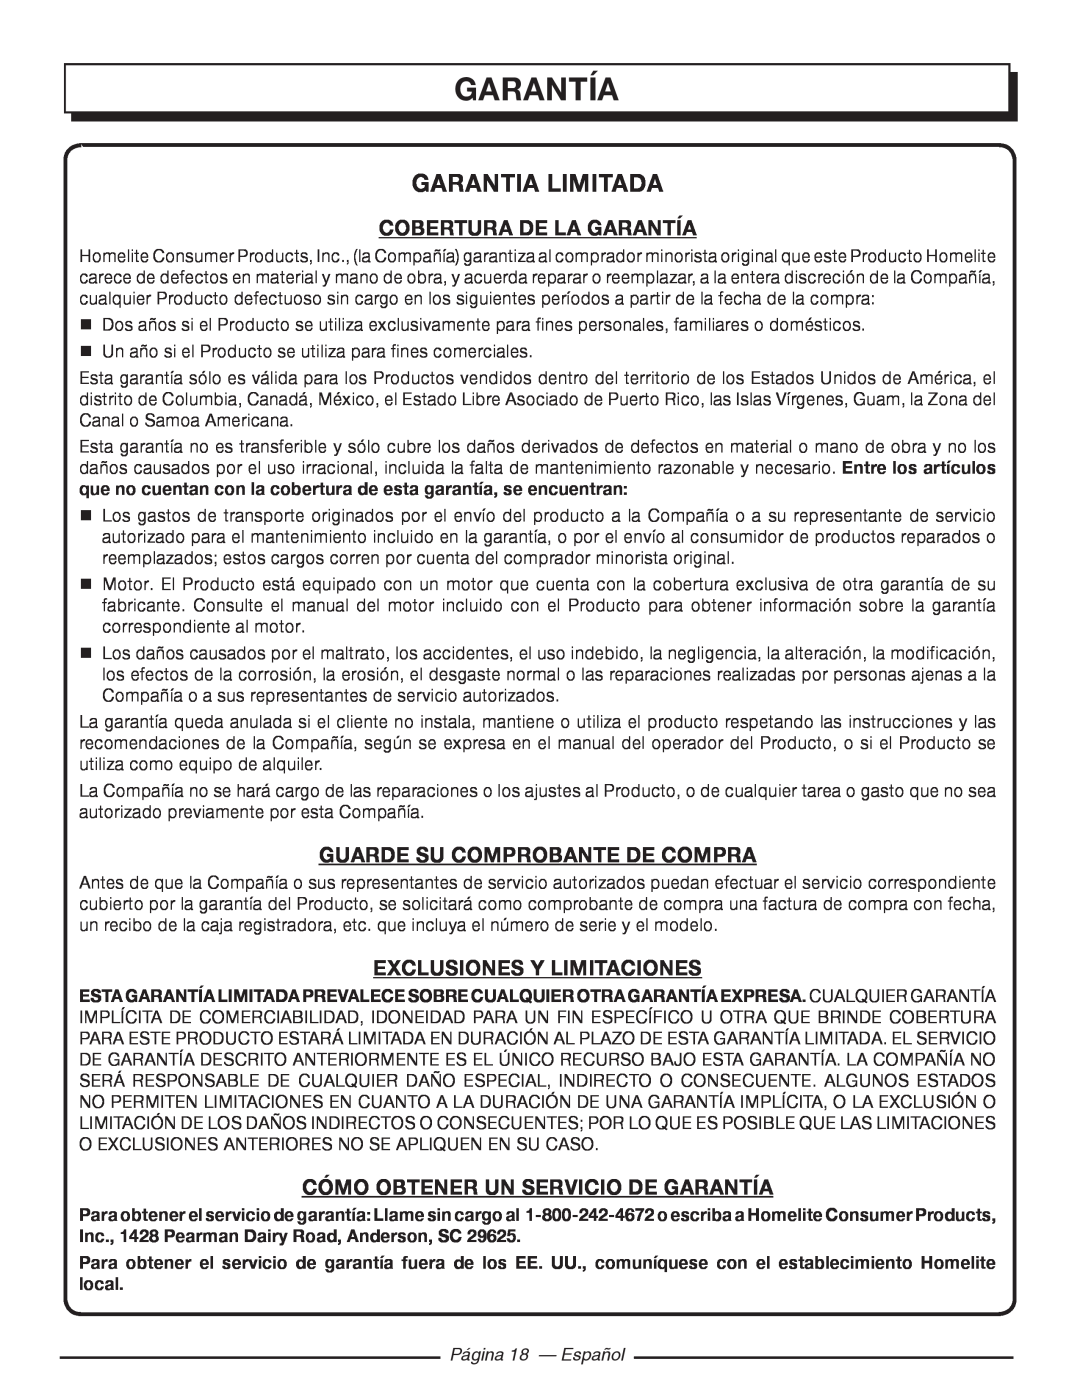 Homelite HGCA5700 Garantia Limitada, Cobertura De La Garantía, Guarde Su Comprobante De Compra, Página 18 — Español 